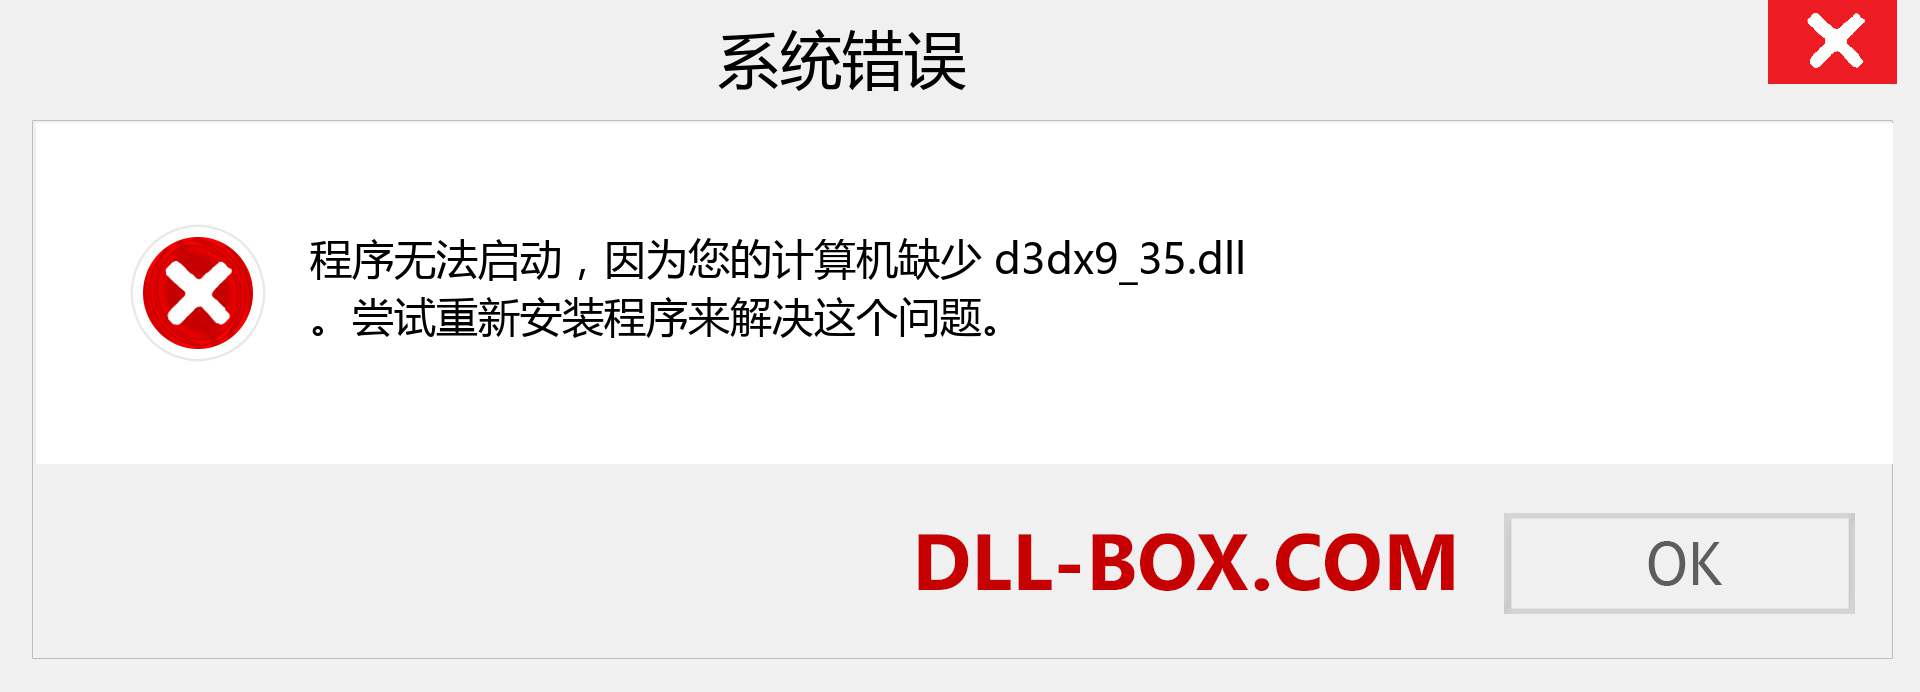 d3dx9_35.dll 文件丢失？。 适用于 Windows 7、8、10 的下载 - 修复 Windows、照片、图像上的 d3dx9_35 dll 丢失错误